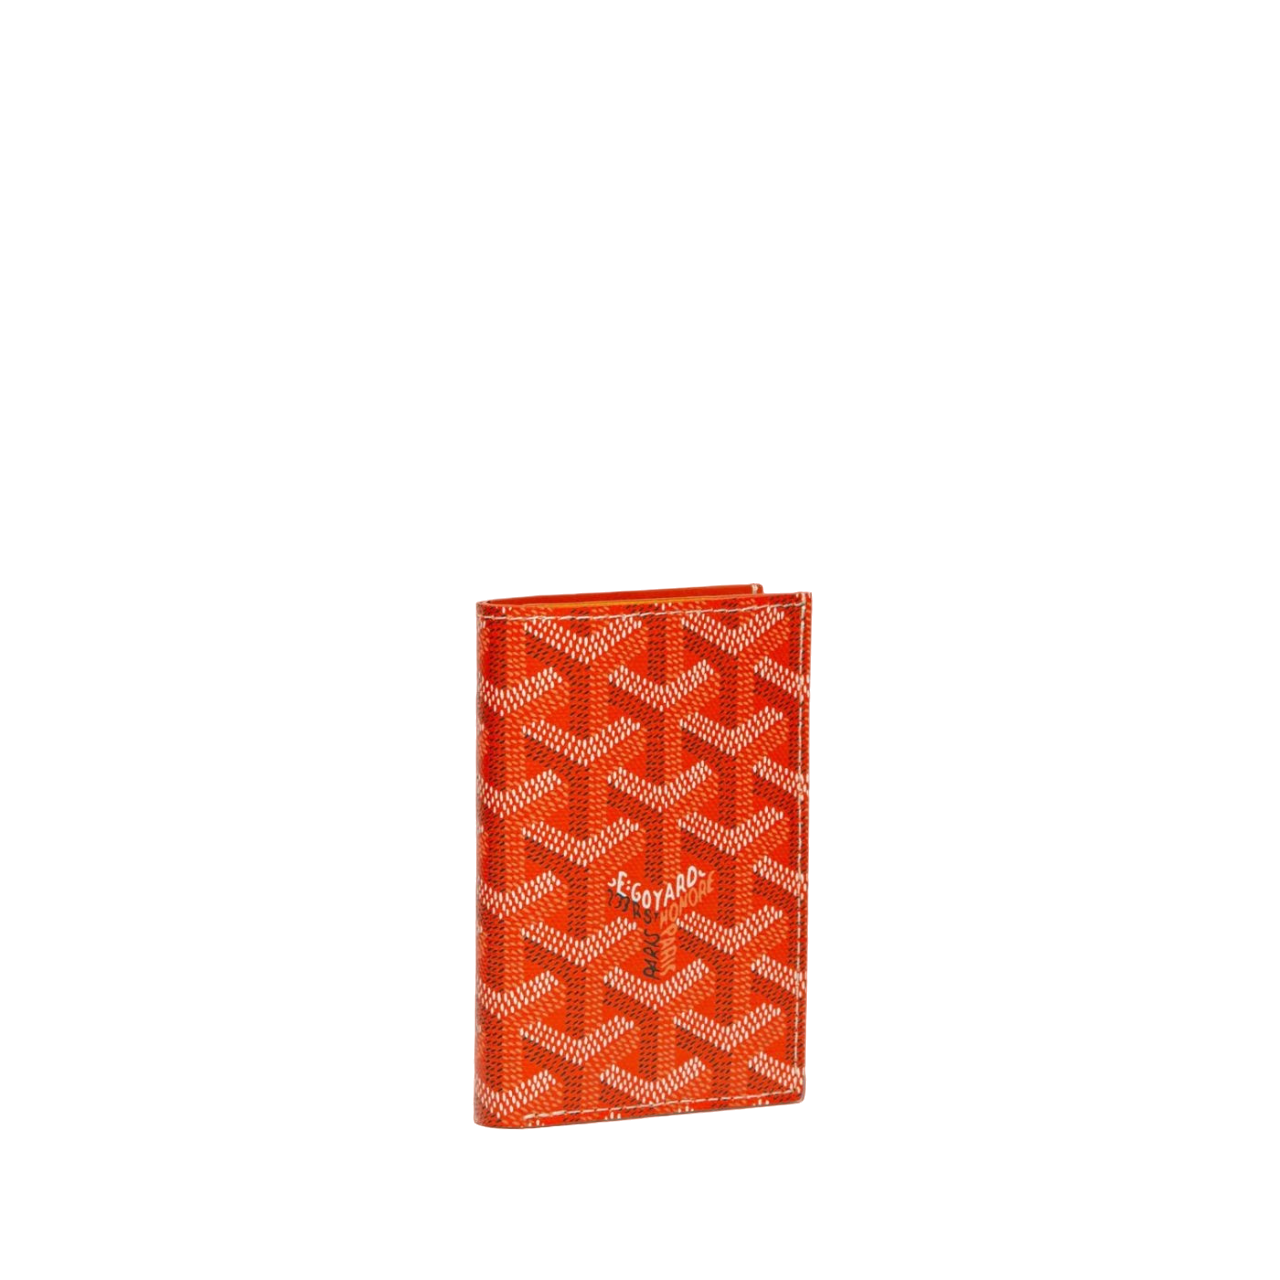 Goyard Saint Pierre Card Holder “Orange”